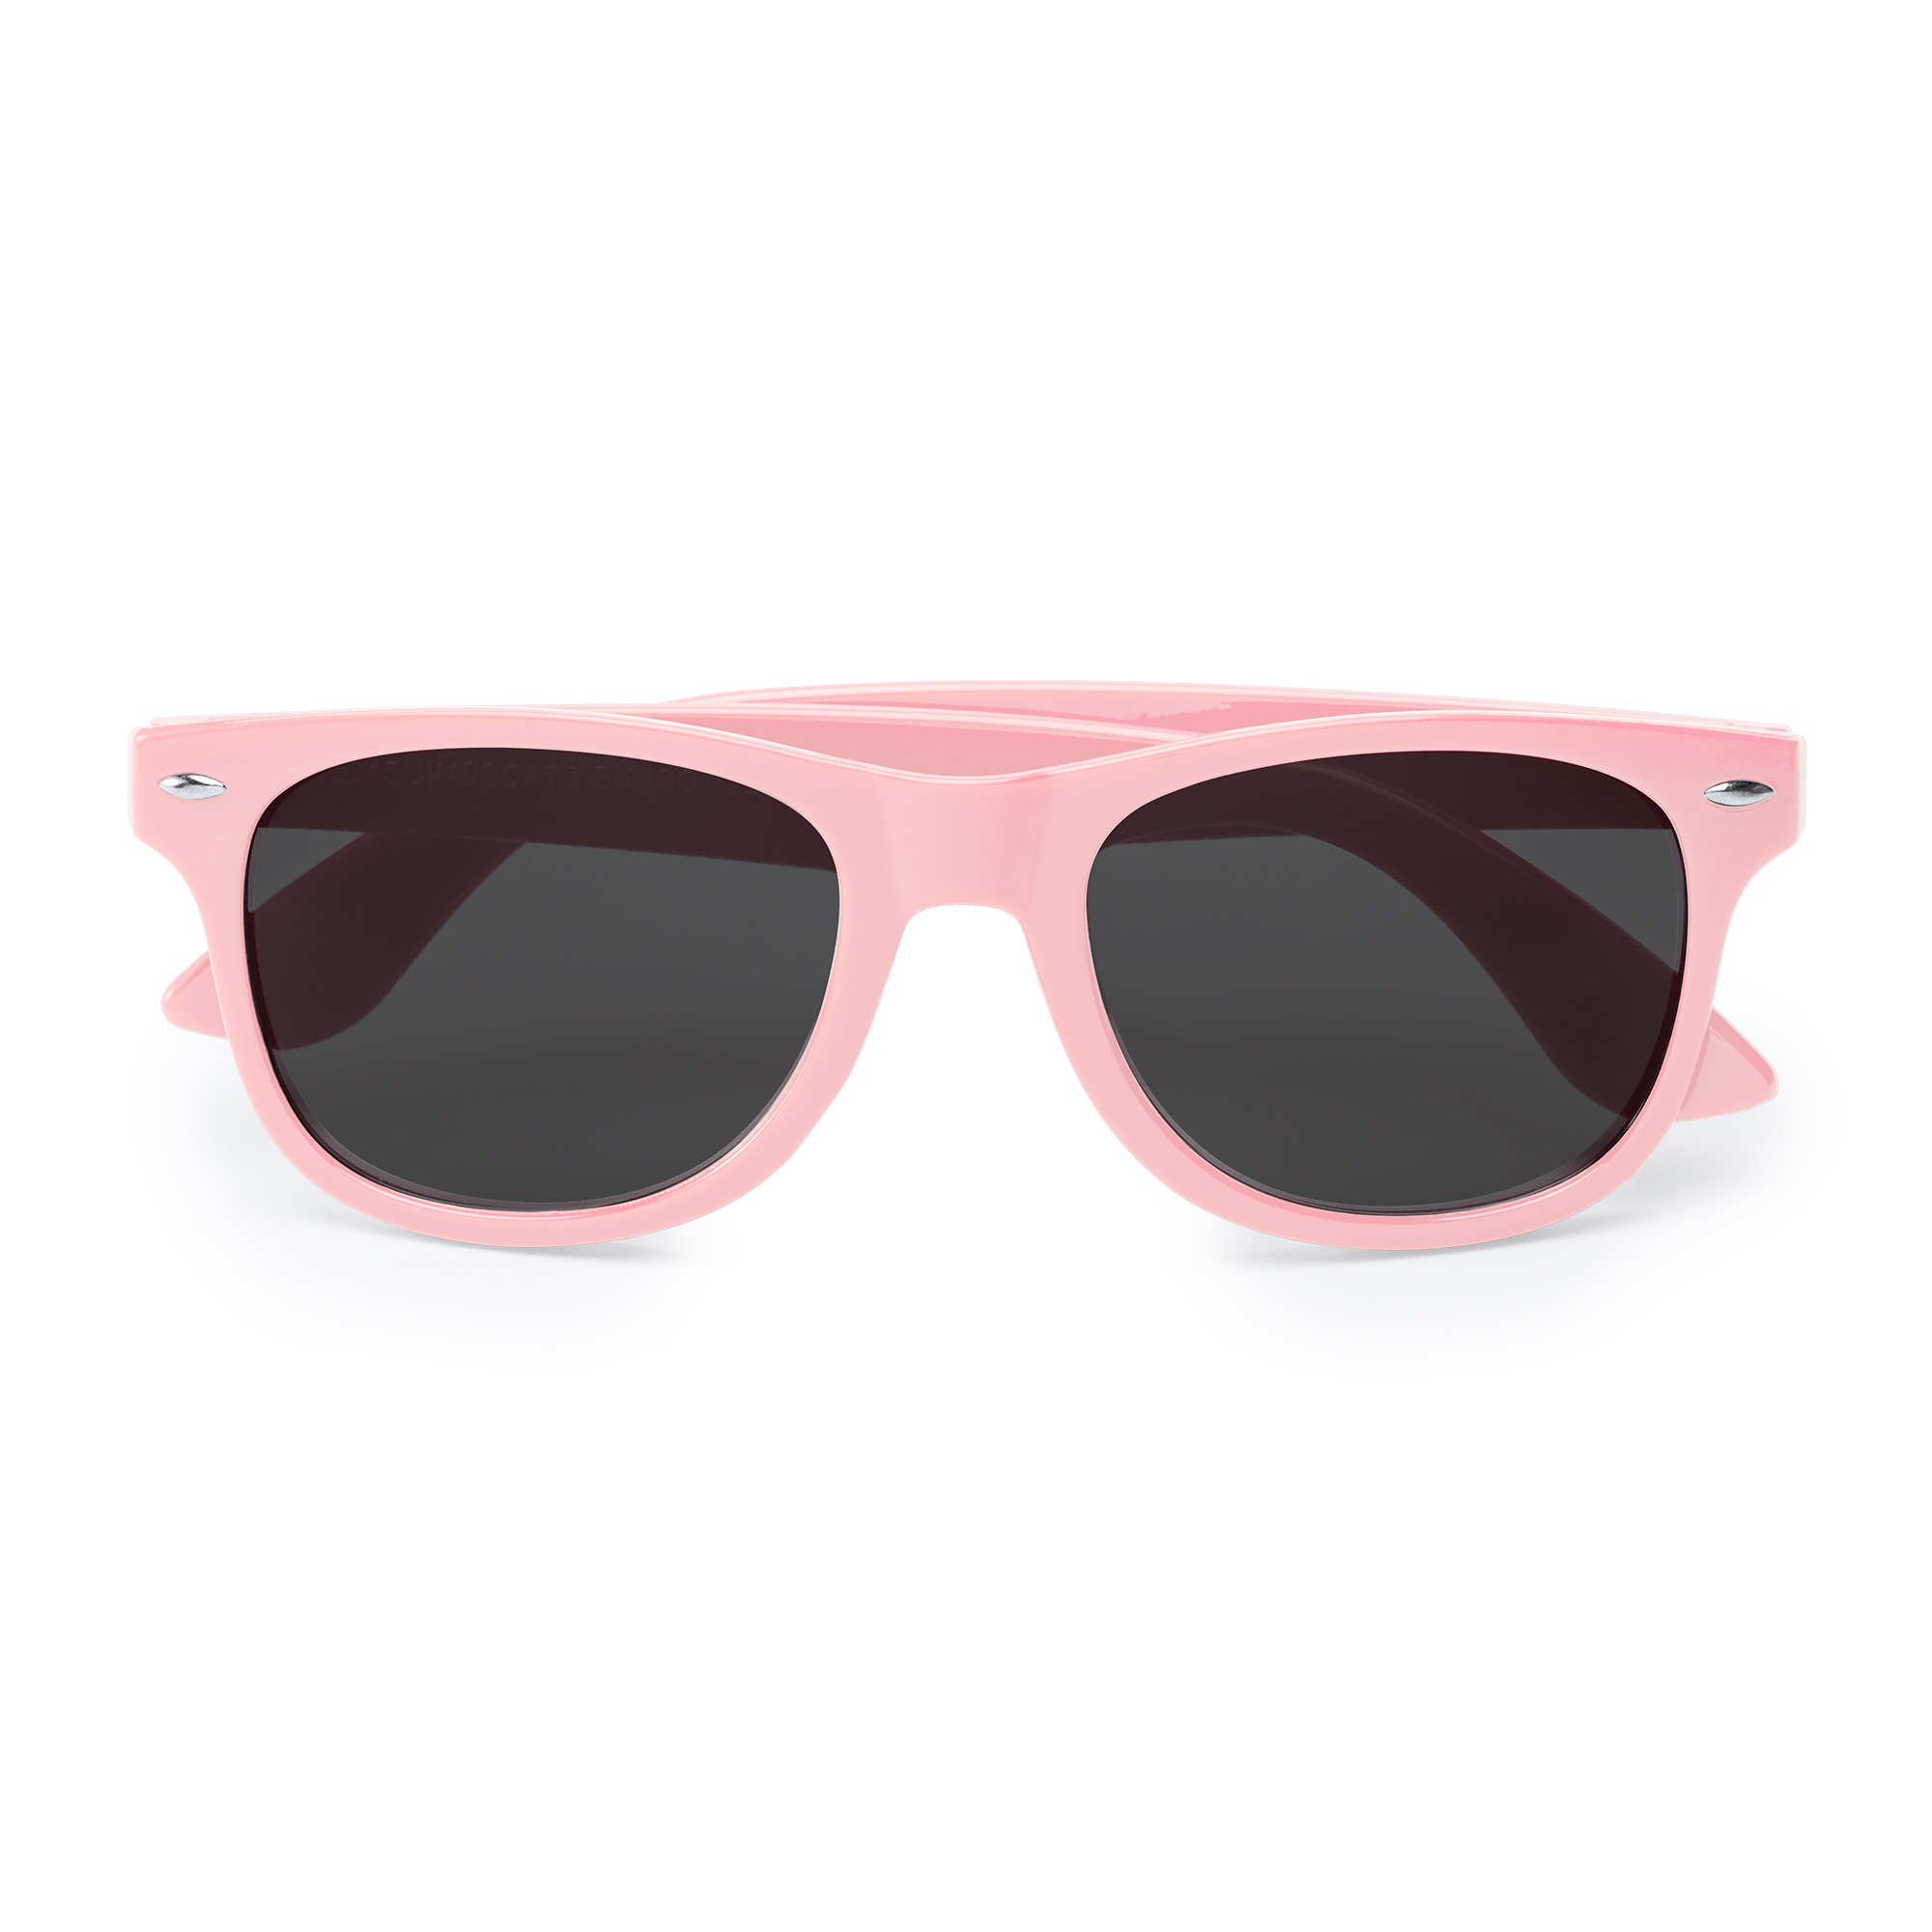 6012-sun-occhiali-da-sole-protezione-uv400-rosa-chiaro.jpg